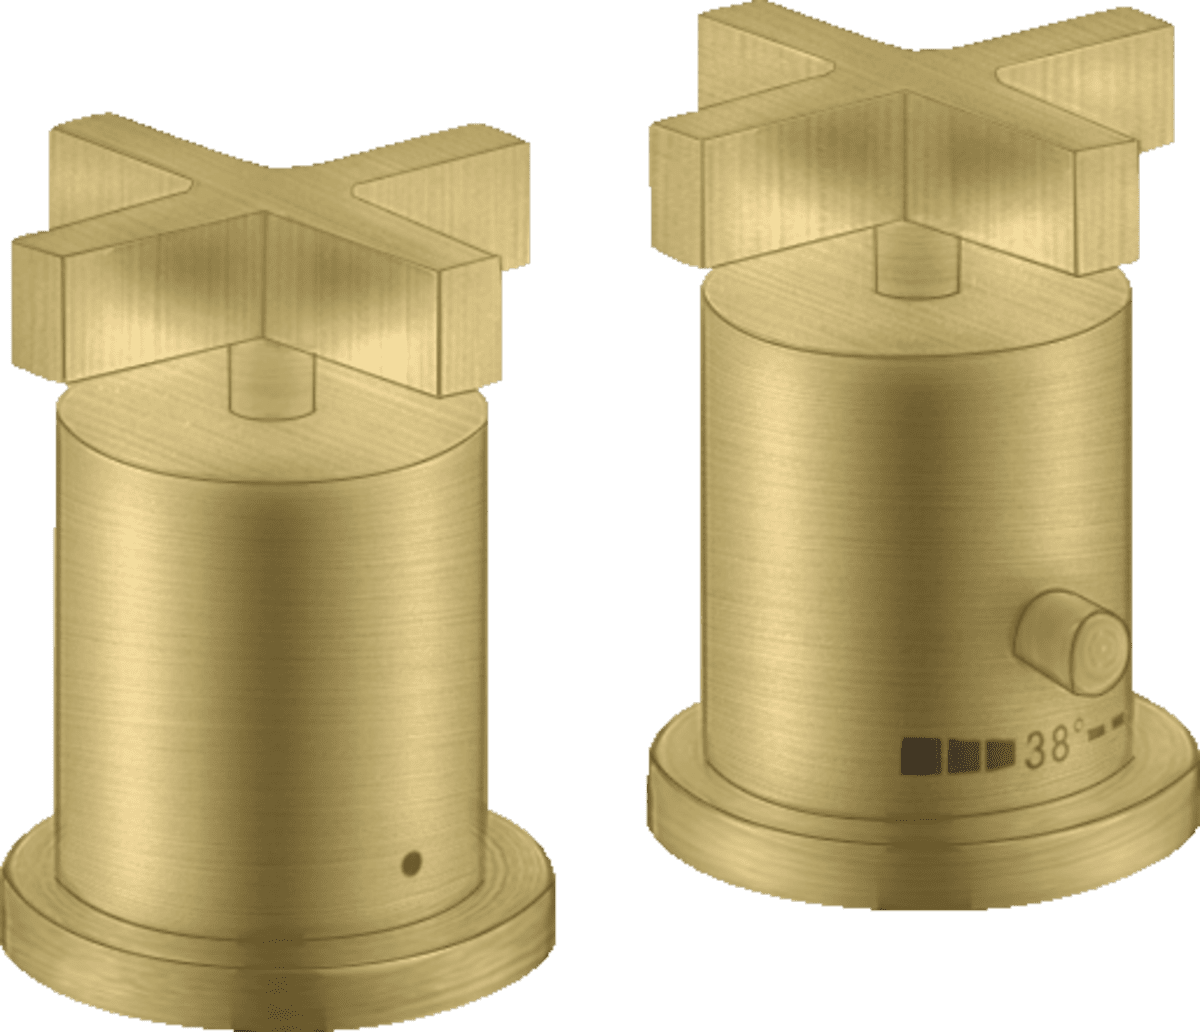 εικόνα του HANSGROHE AXOR Citterio 2-hole rim mounted thermostatic bath mixer with cross handles #39480950 - Brushed Brass